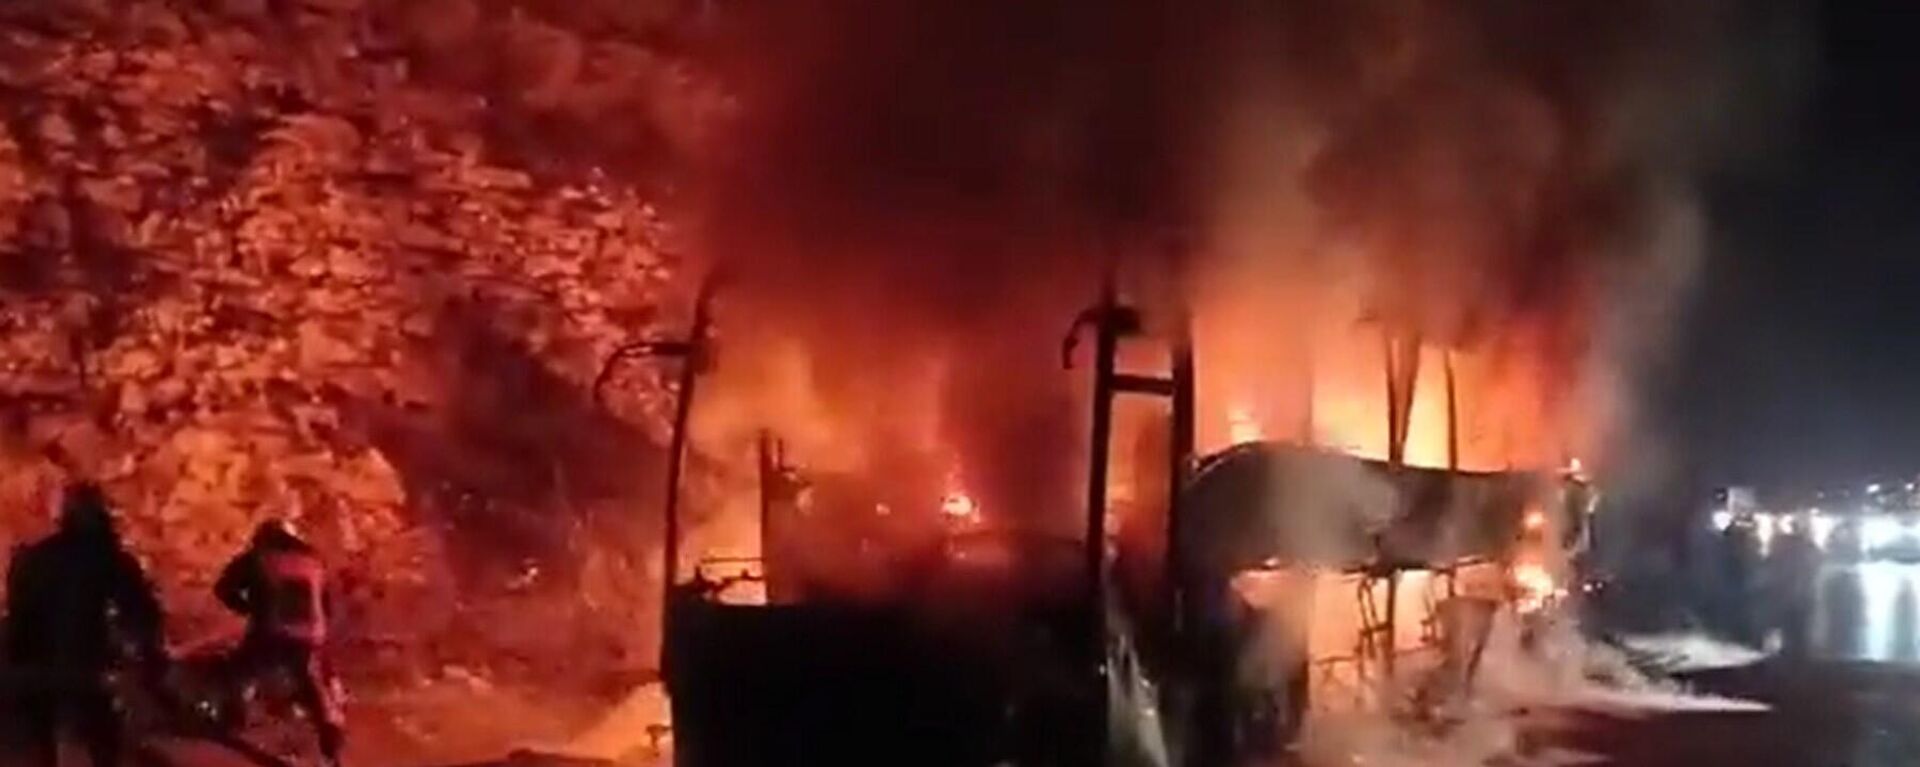 Mersin’in Tarsus ilçesinde seyir halindeki yolcu otobüsü alev alev yandı. 18 yolcu polislerin yardımıyla yanan araçtan yara almadan kurtarıldı. - Sputnik Türkiye, 1920, 13.09.2022